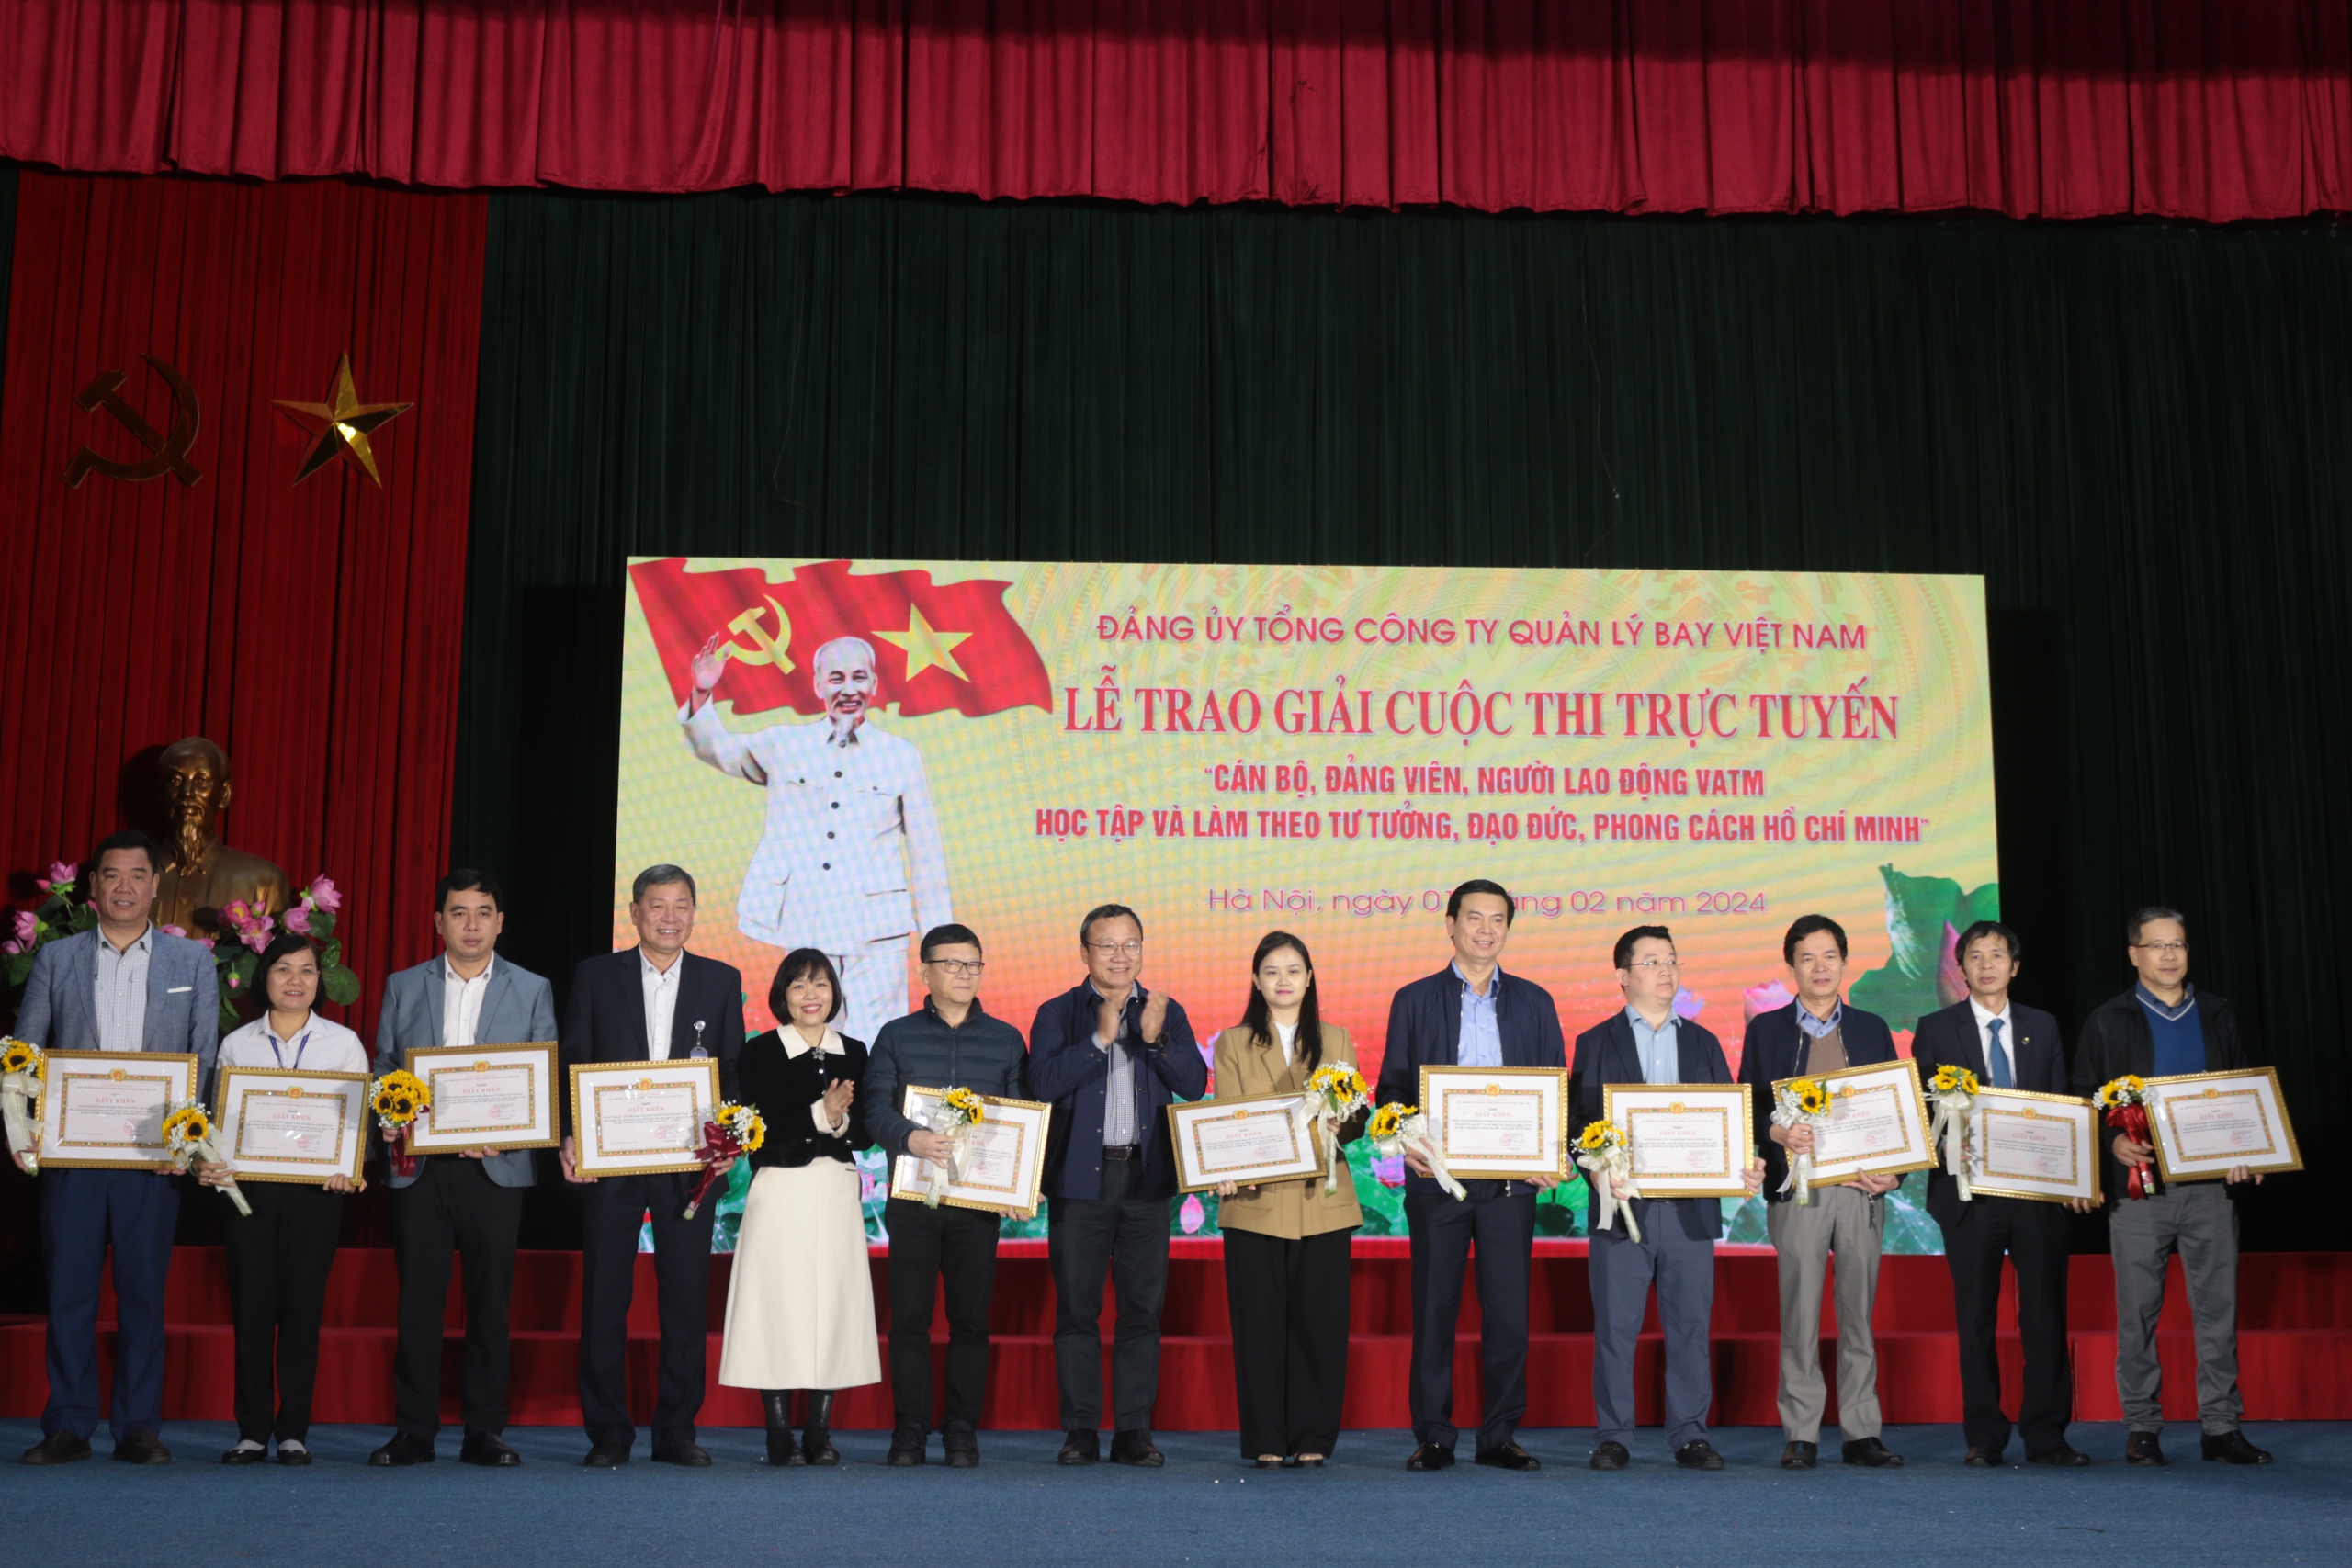 Trao giải cuộc thi "Cán bộ, đảng viên, người lao động VATM học tập, làm theo tư tưởng, đạo đức, phong cách Hồ Chí Minh"- Ảnh 6.